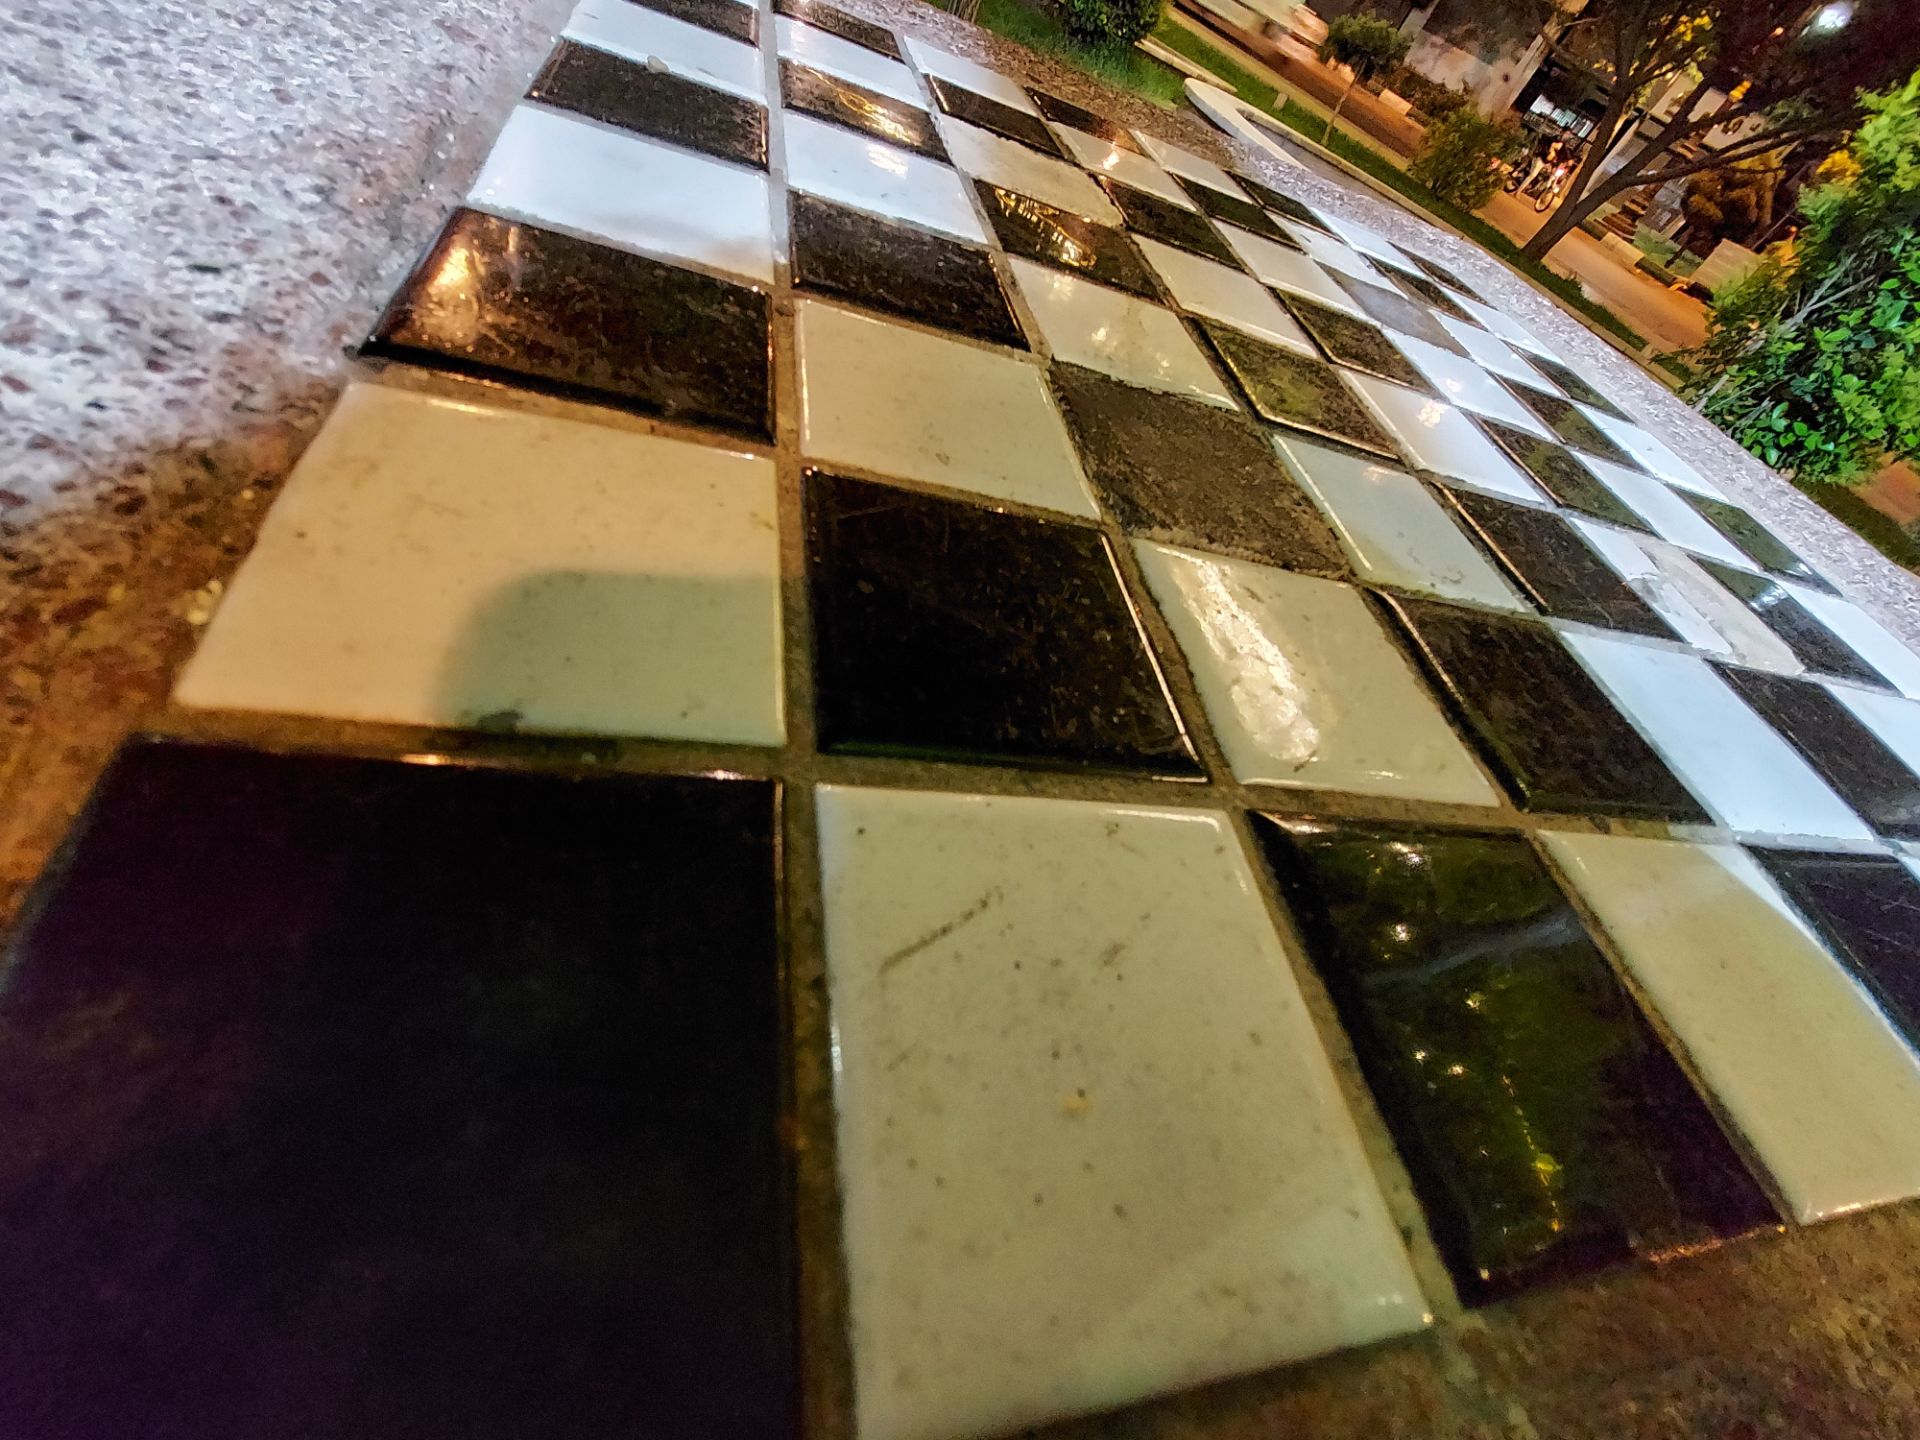 عکس نمونه دوربین اولتراواید گلکسی M51 سامسونگ در نور کم - صفحه شطرنج در میدان هفت حوض